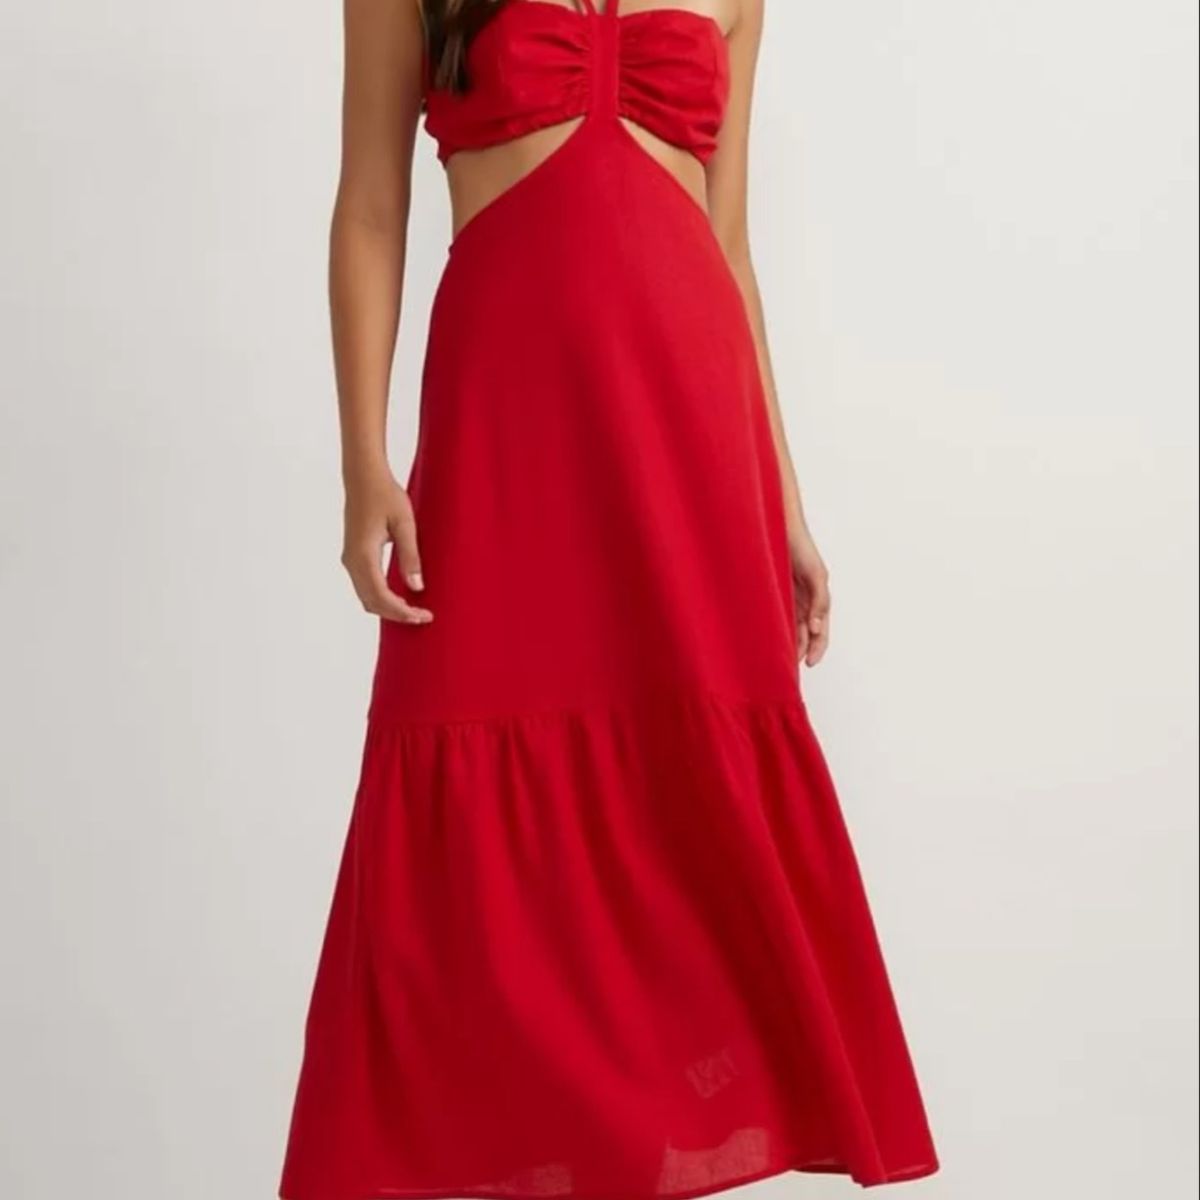 Vestido feminino midi frente unica x fenda roupa elegante - R$ 229.99, cor  Vermelho (cor vinho) #159201, compre agora